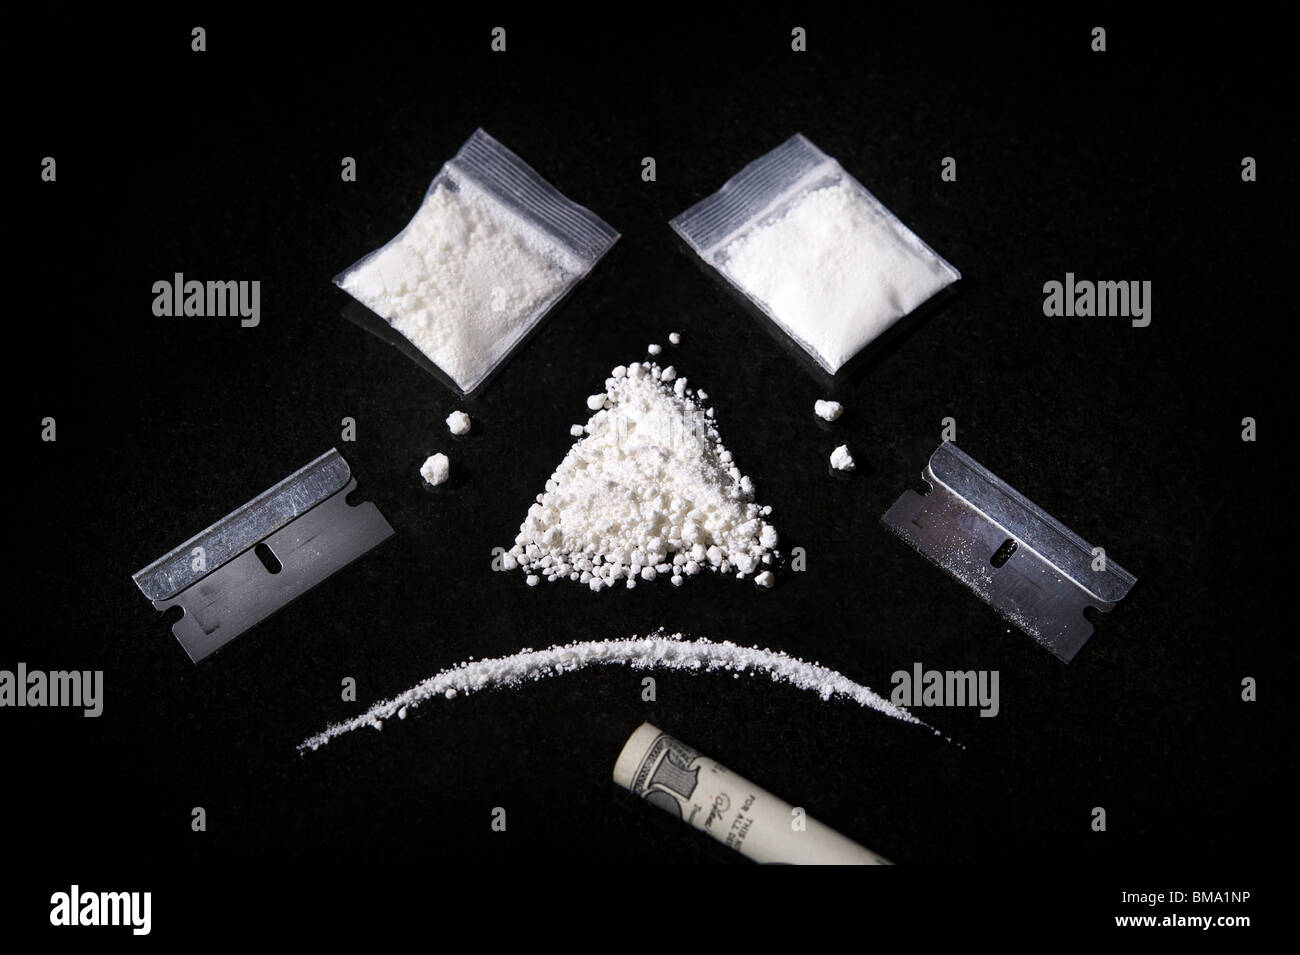 Image d'une composition de la cocaïne, rasoir et mis le projet de loi, ce qui rend un visage triste Banque D'Images